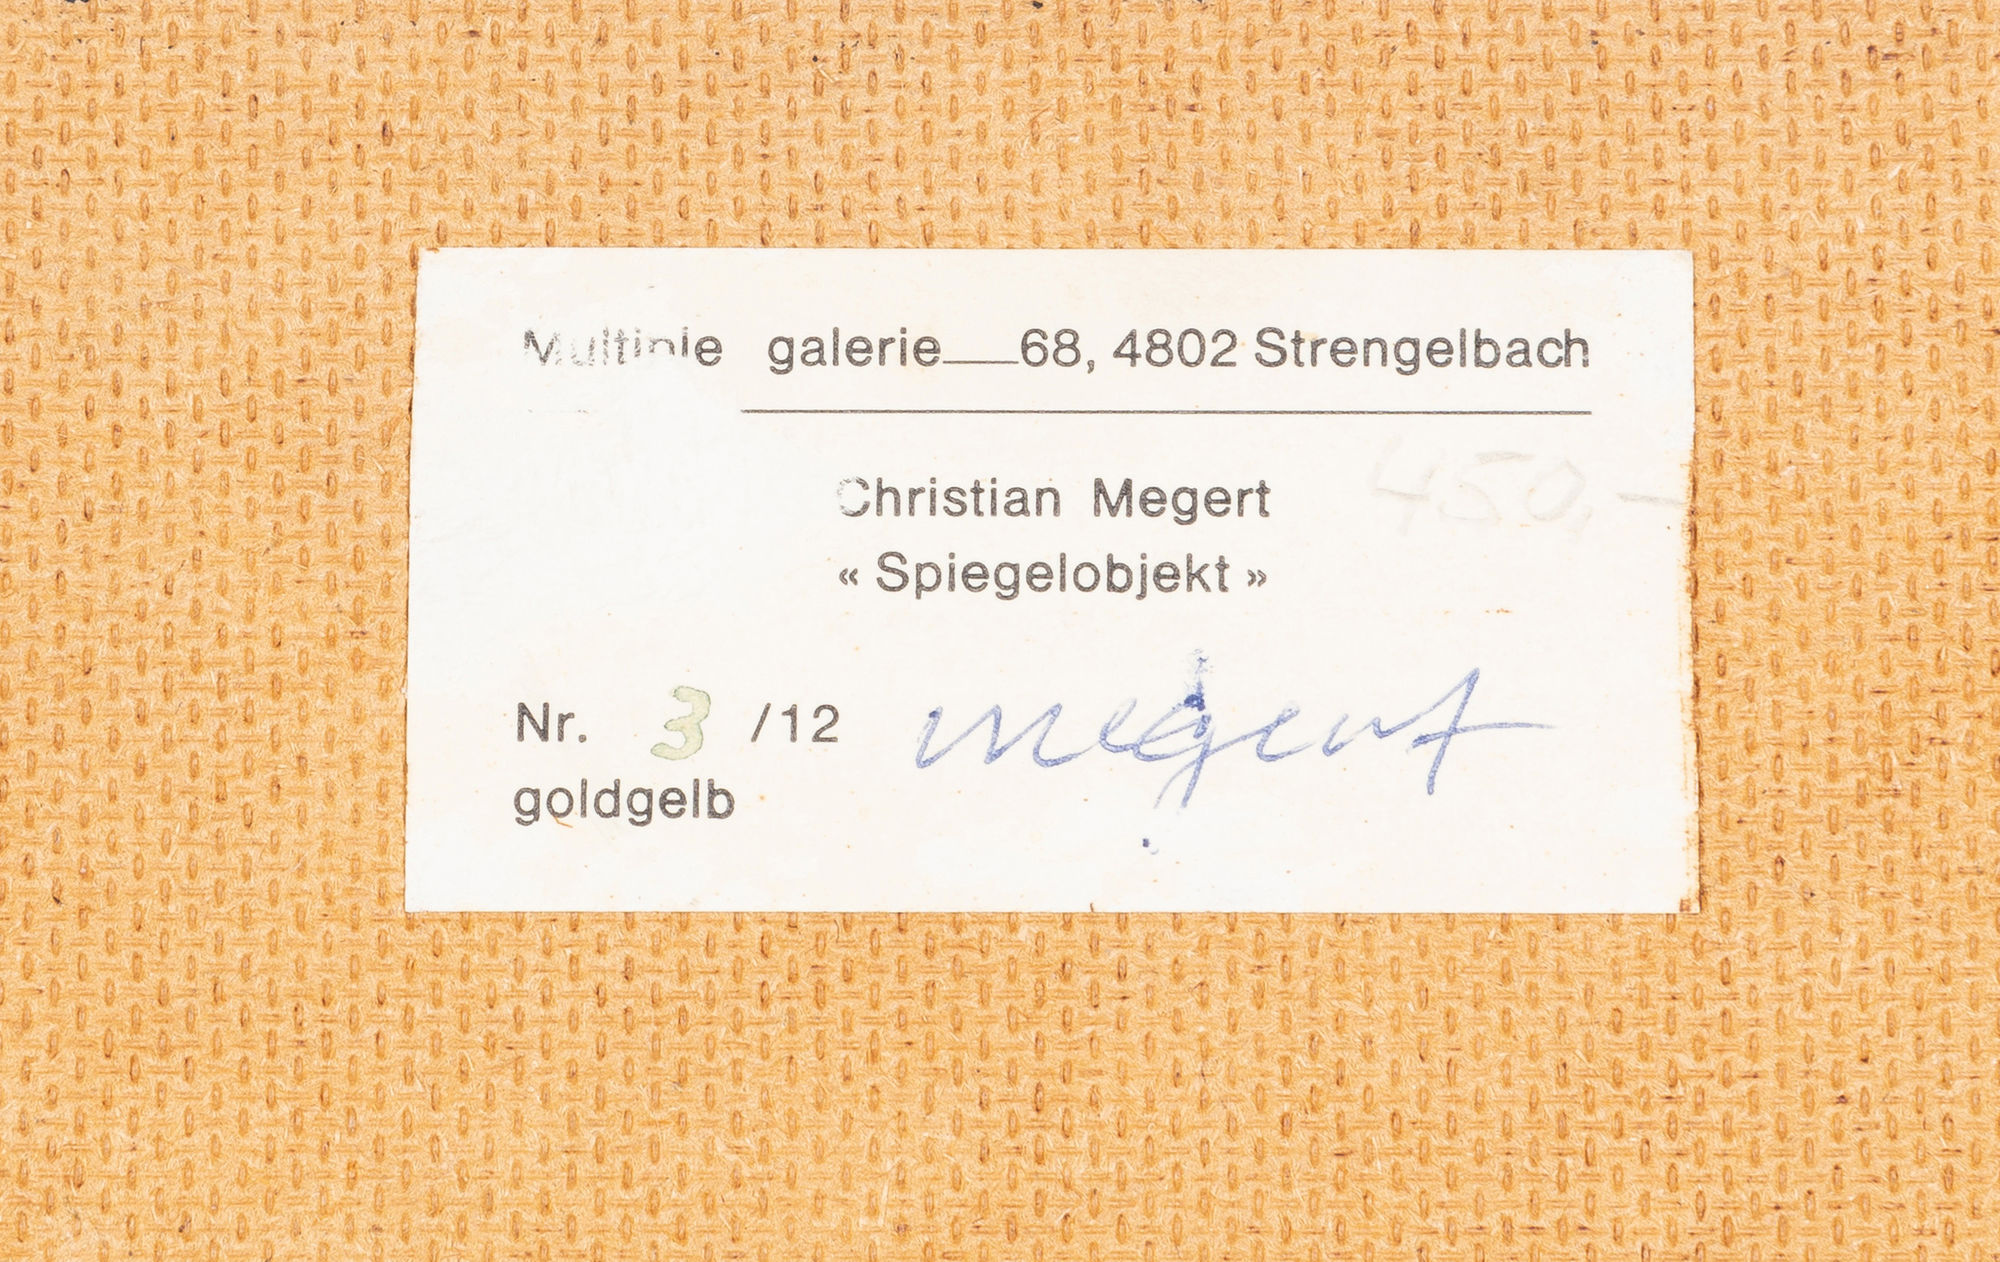 Christian Megert Spiegelobjekt